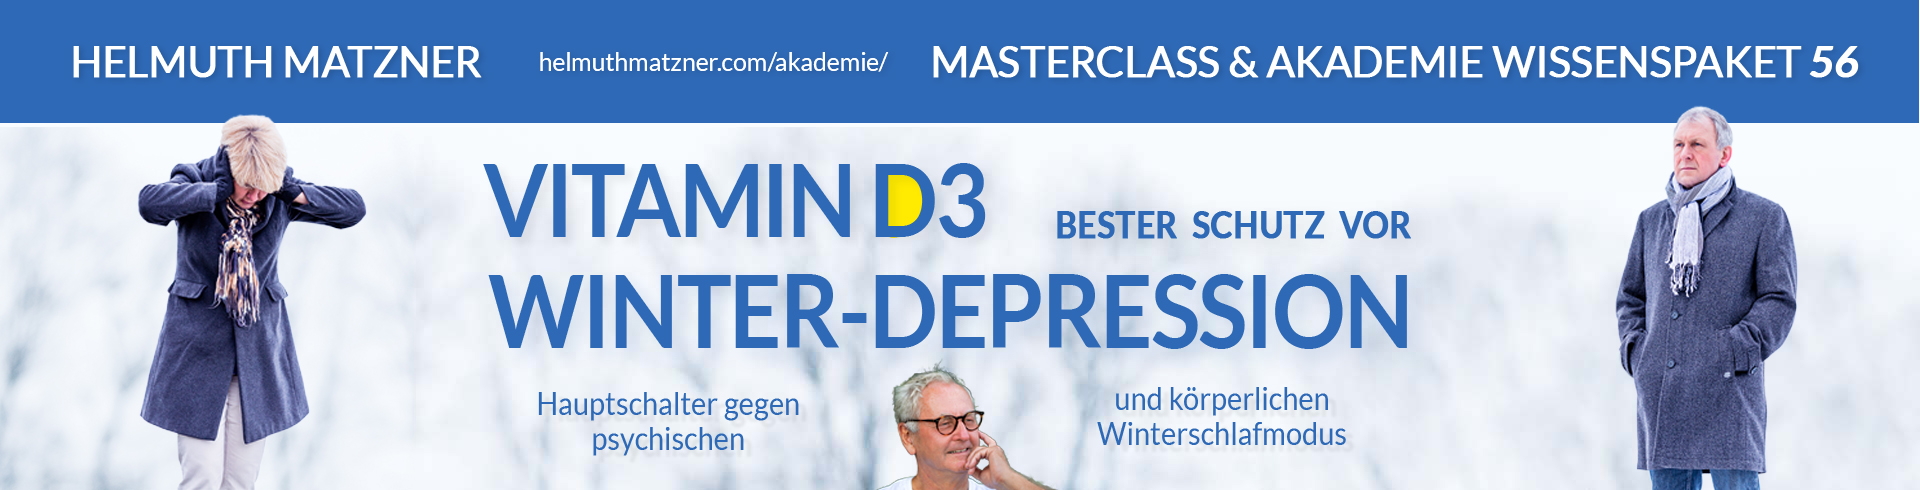 Helmuth Matzner - Masterclass & Akademie Wissenspaket 56 - Vitamin D3 - Winterdepression - LP-BANNER v02